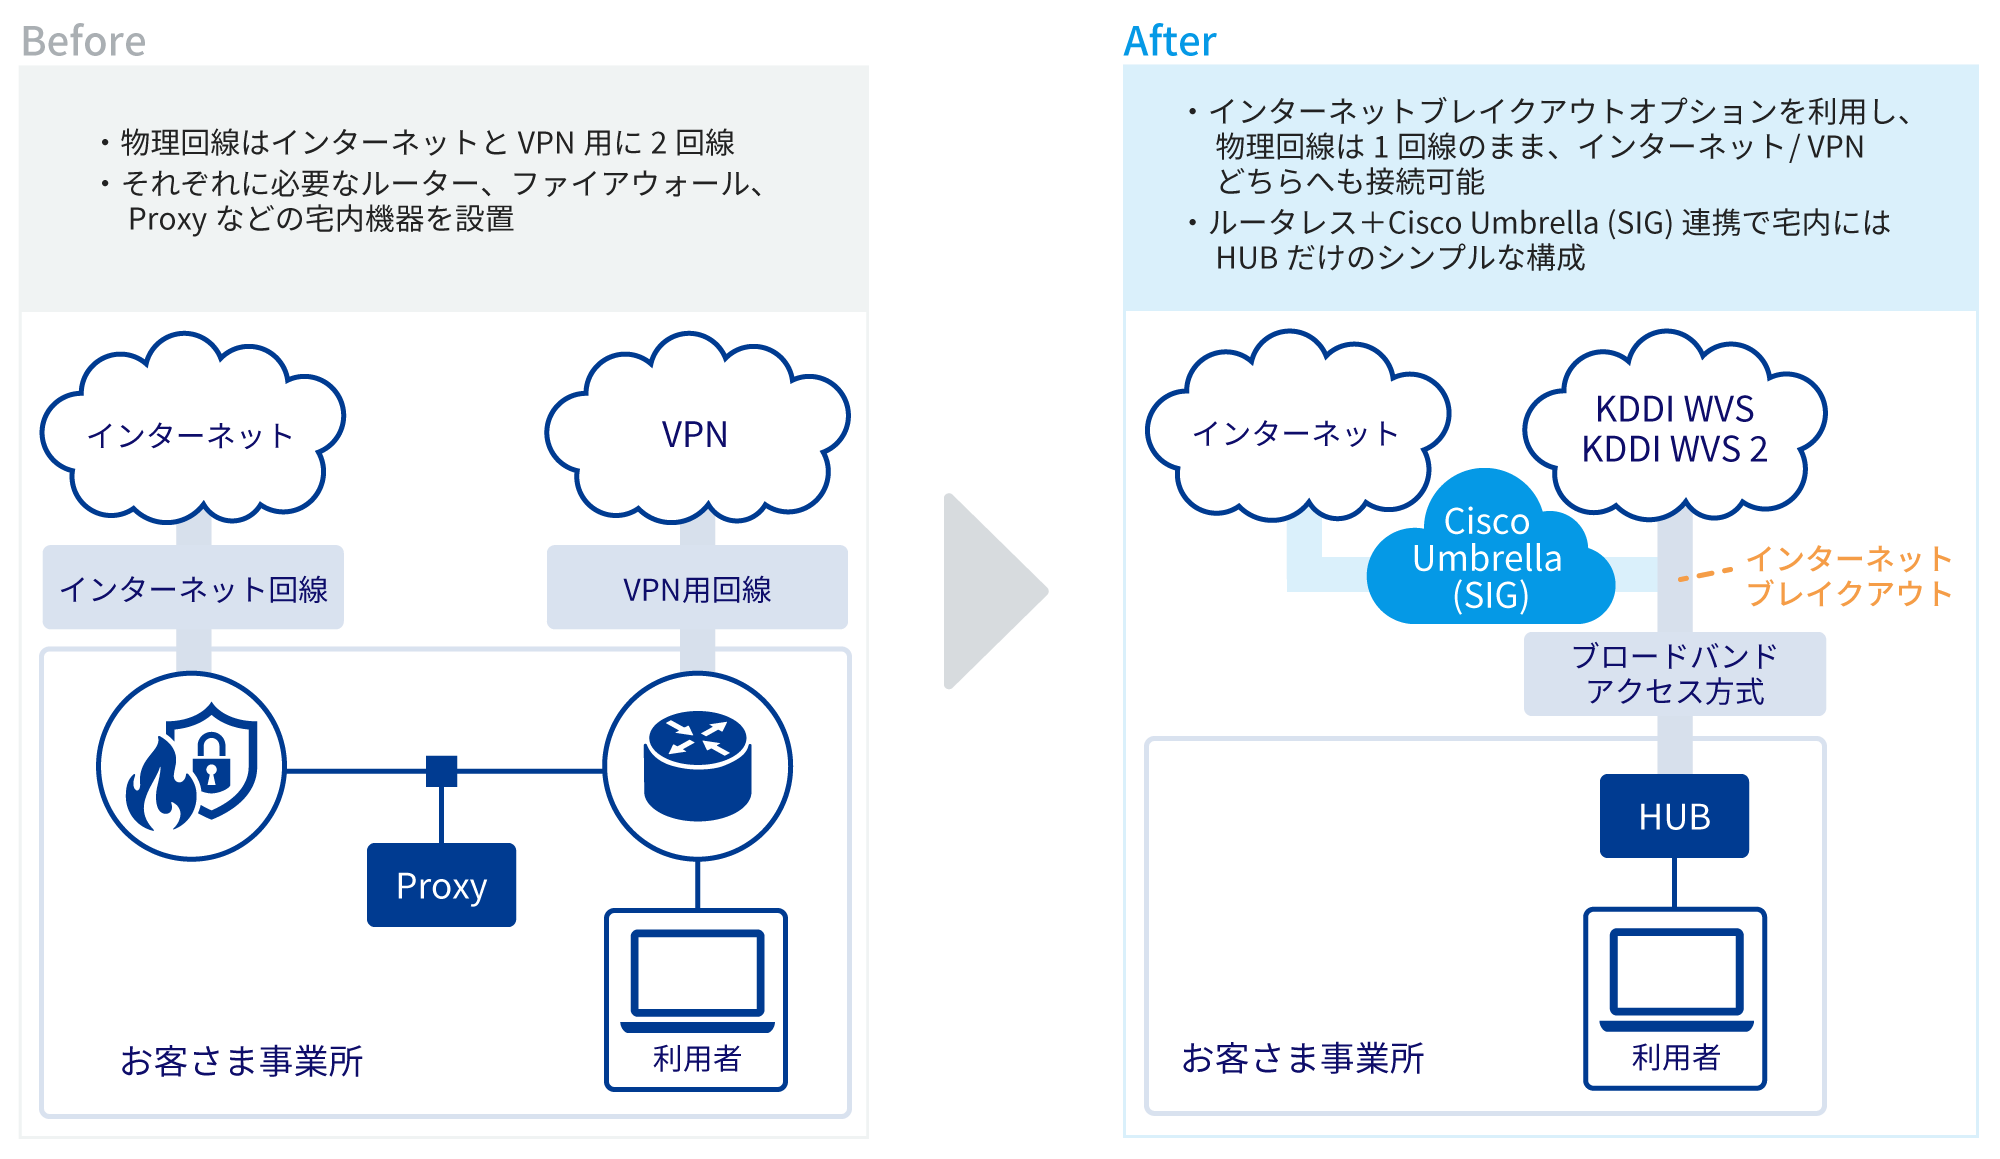  Before ・物理回線はインターネットとVPN用に2回線・それぞれに必要なルーター、ファイアウォール、Proxyなどの宅内機器を設置　After ・インターネットブレイクアウトオプションを利用し、物理回線は1回線のまま、インターネット/VPNどちらへも接続可能・ルーターレス+Cisco Umbrella(SIG)連携で宅内にはHUBだけのシンプルな構成